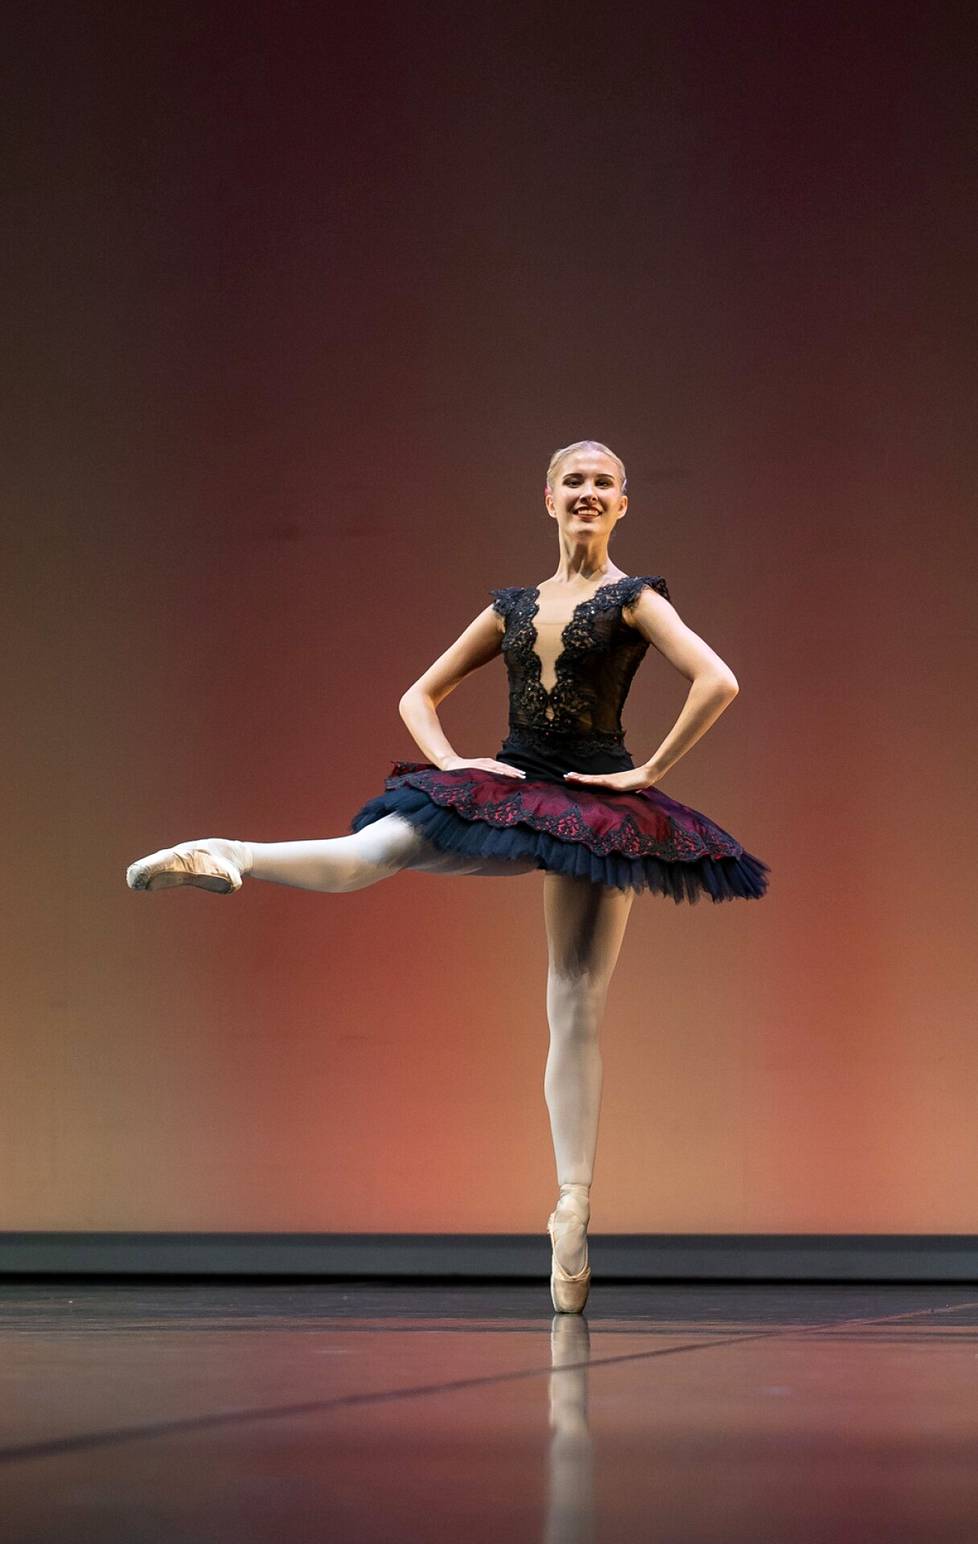 Suomen Anni Martinsén on yksi Helsingin kansainvälisen balettikilpailun finalisteista.